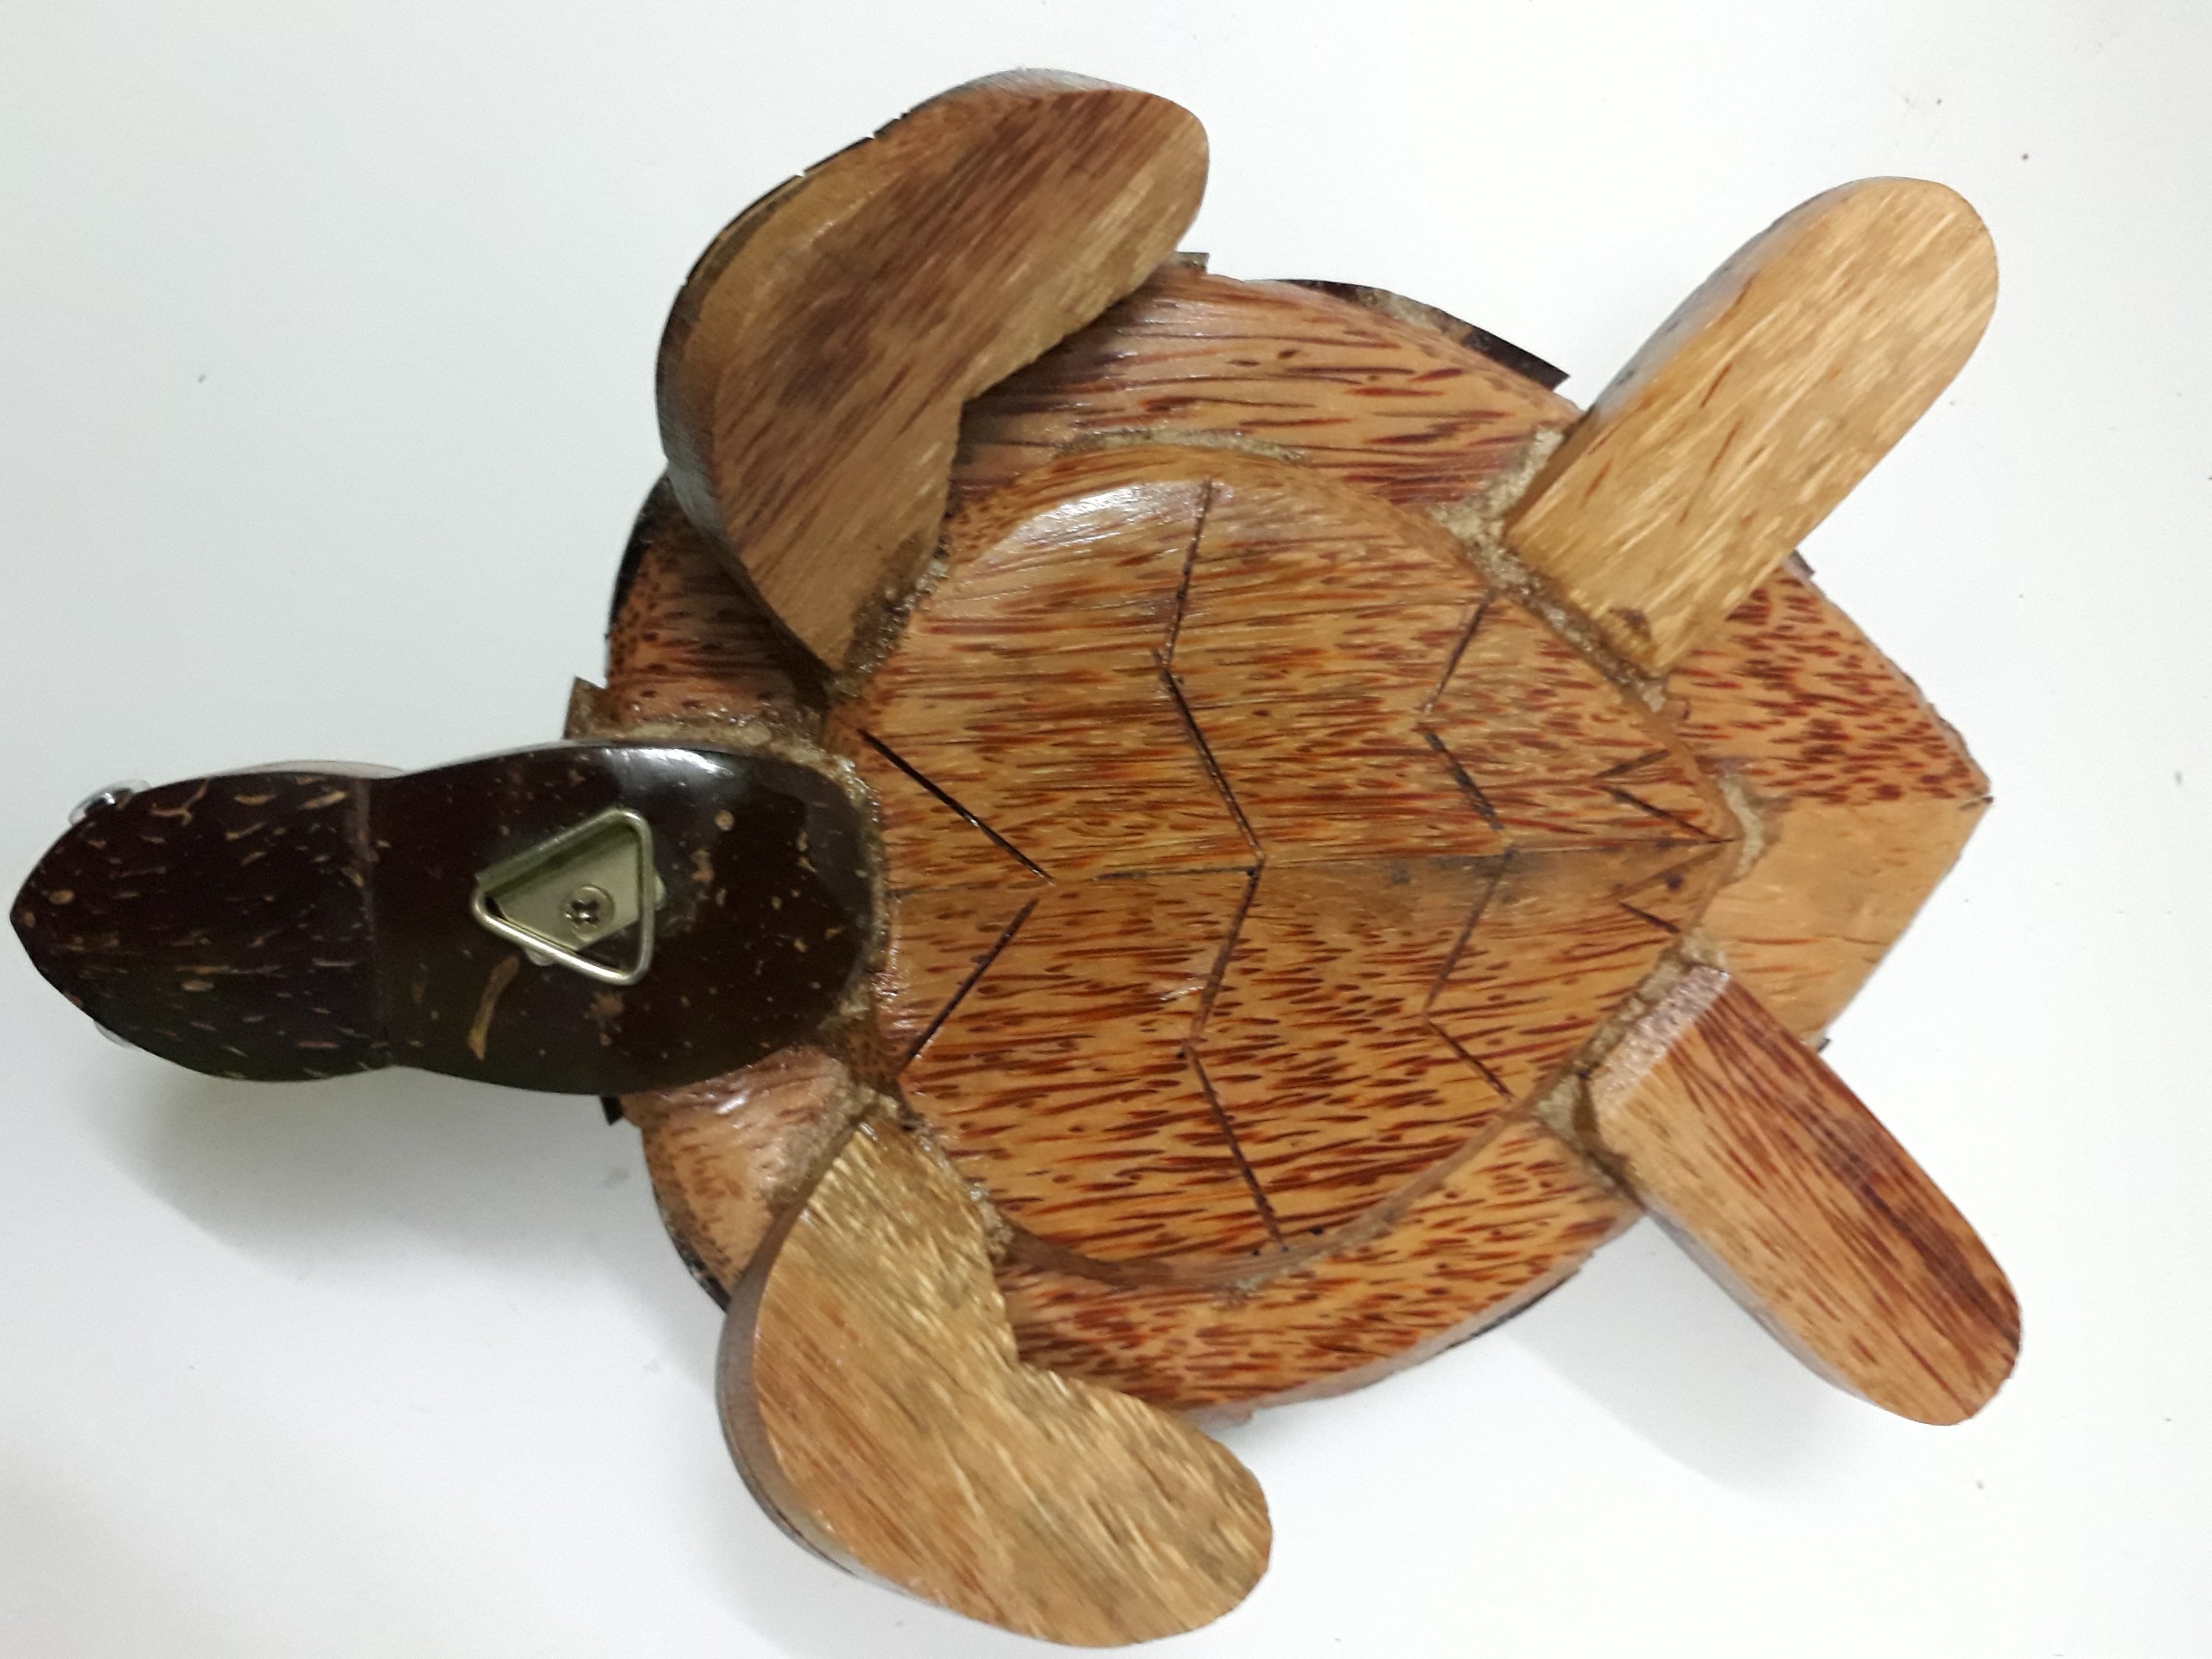 Con rùa làm từ gỗ và gáo dừa ý nghĩa tài lộc trong phong thủy (27 x 19 x 7cm)